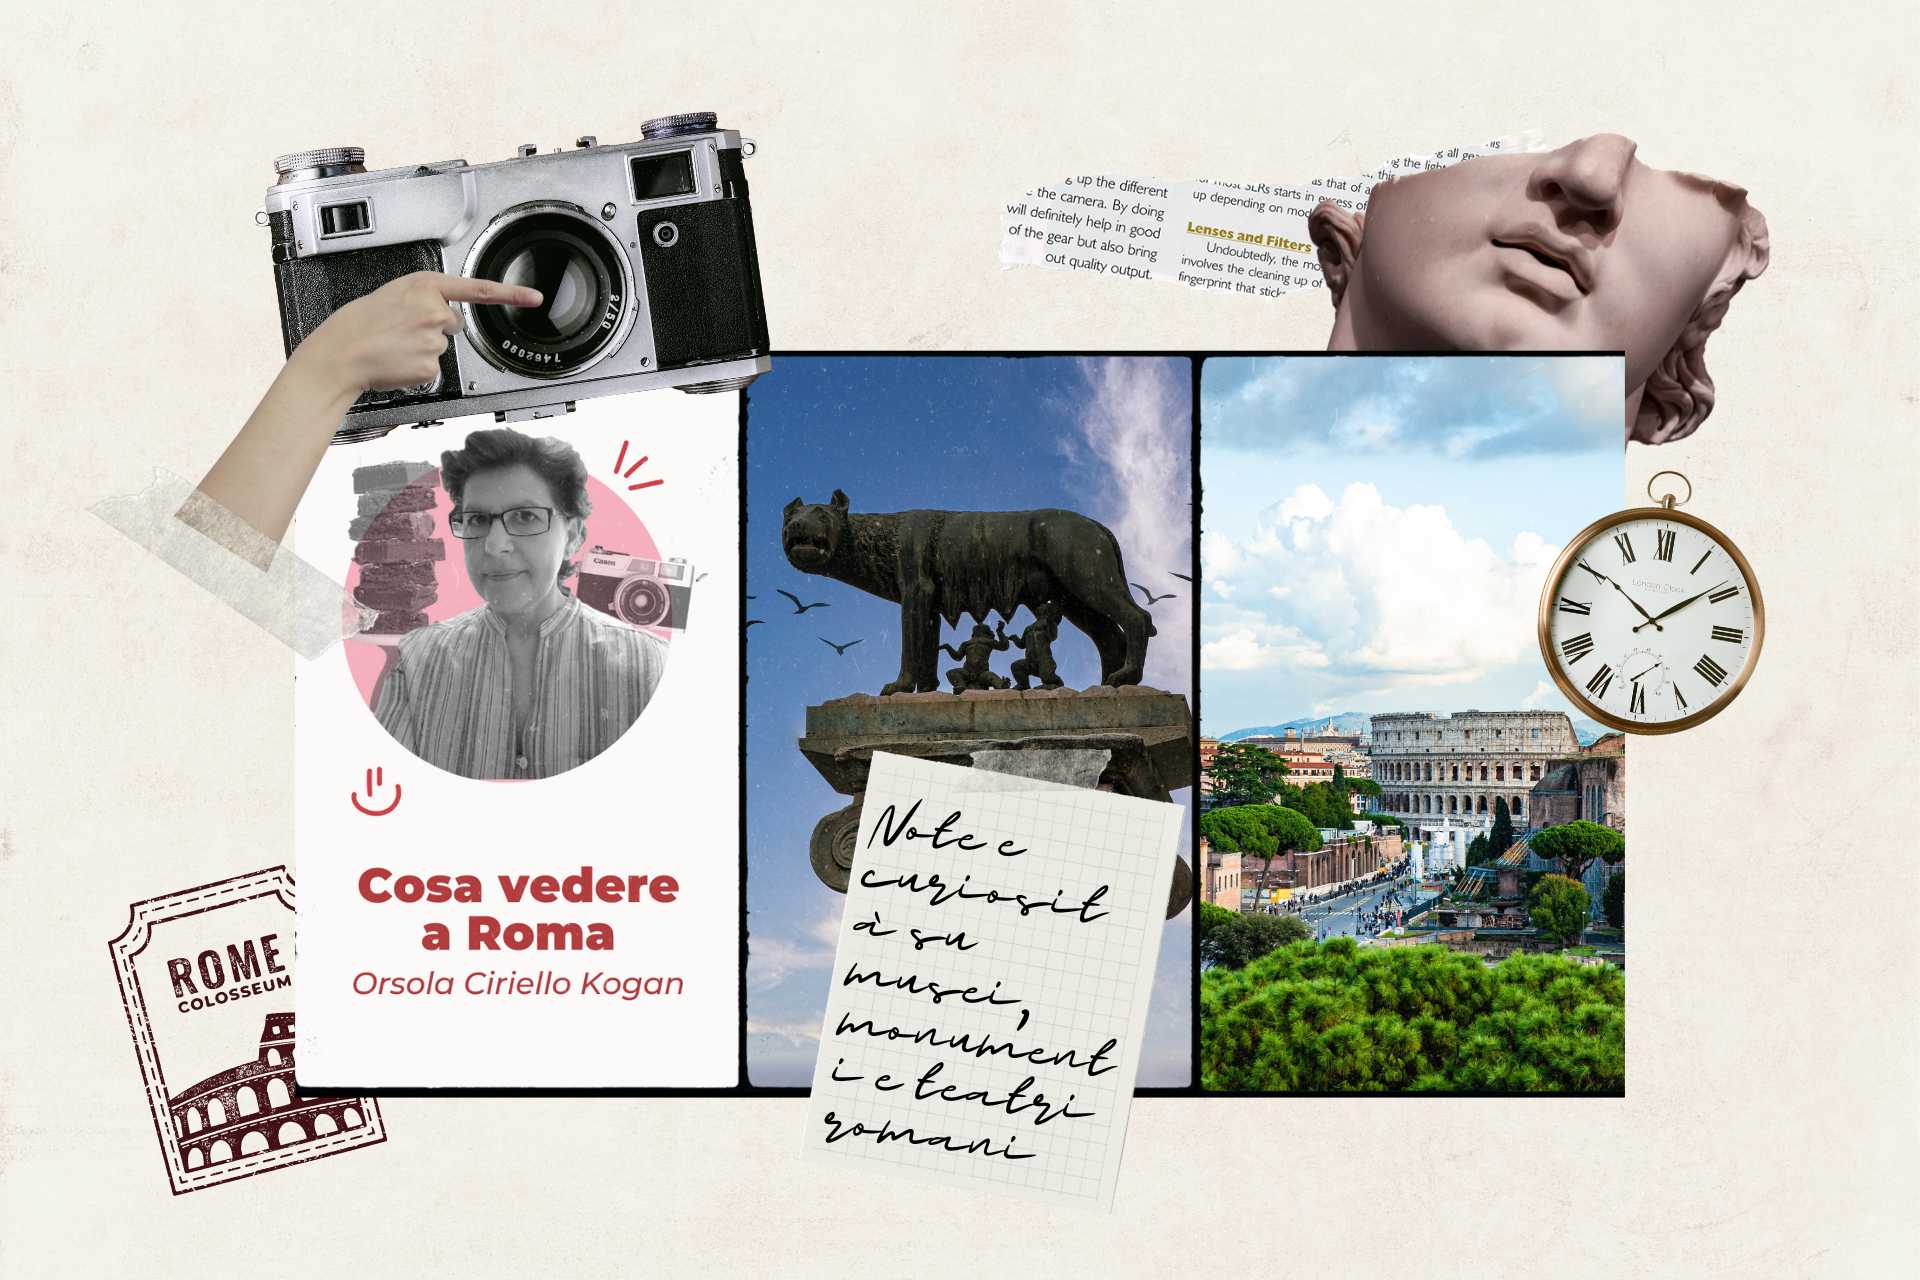 Musei, teatri e monumenti di Roma (collage)